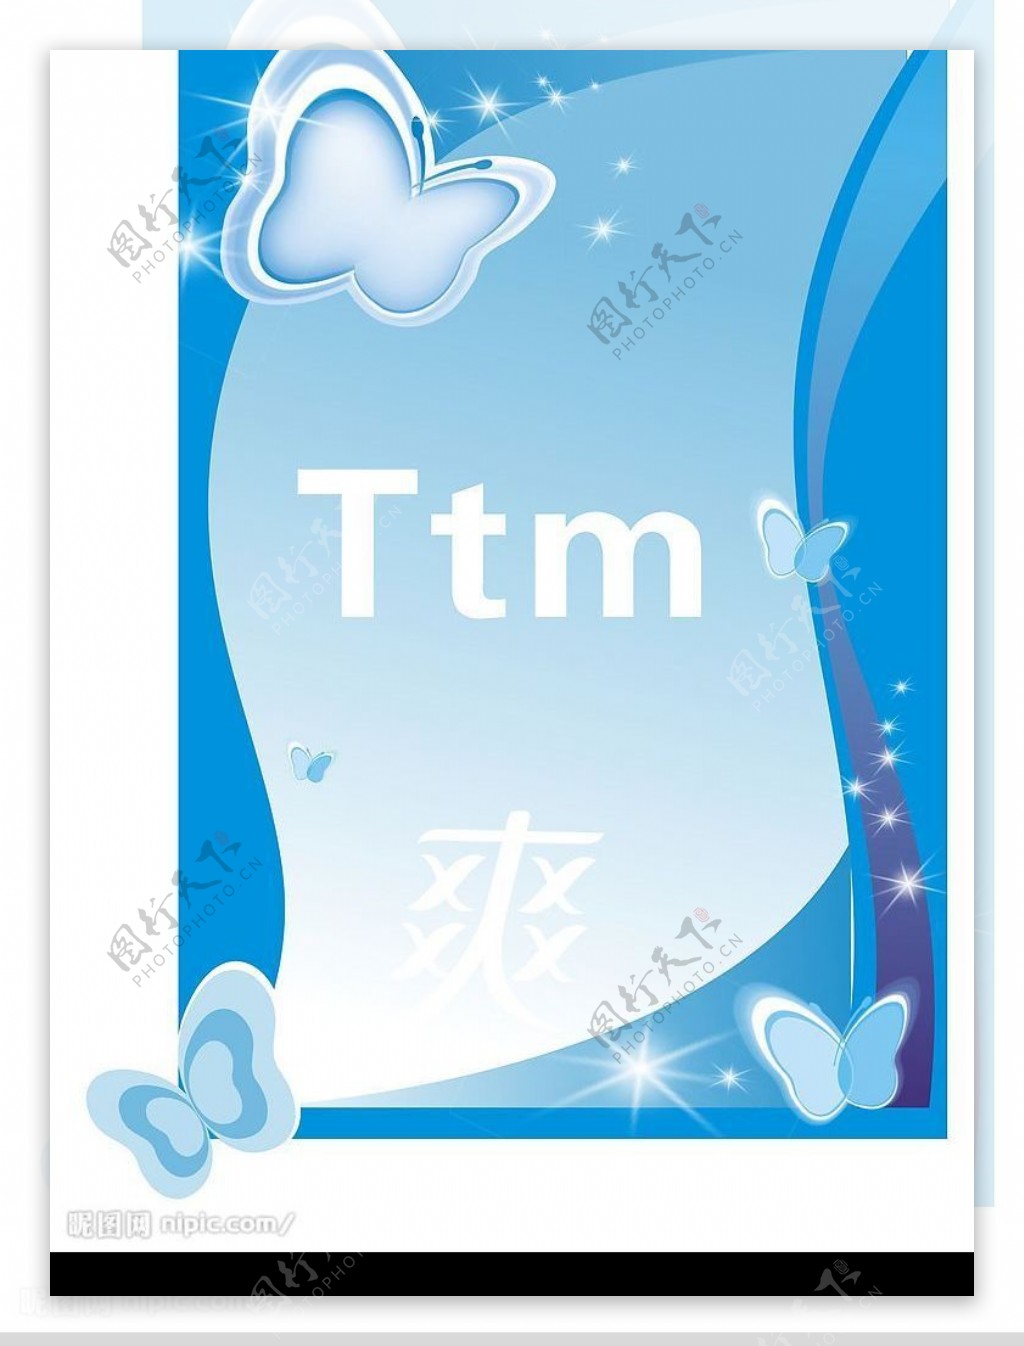 TTm空白海报蓝色背景图片